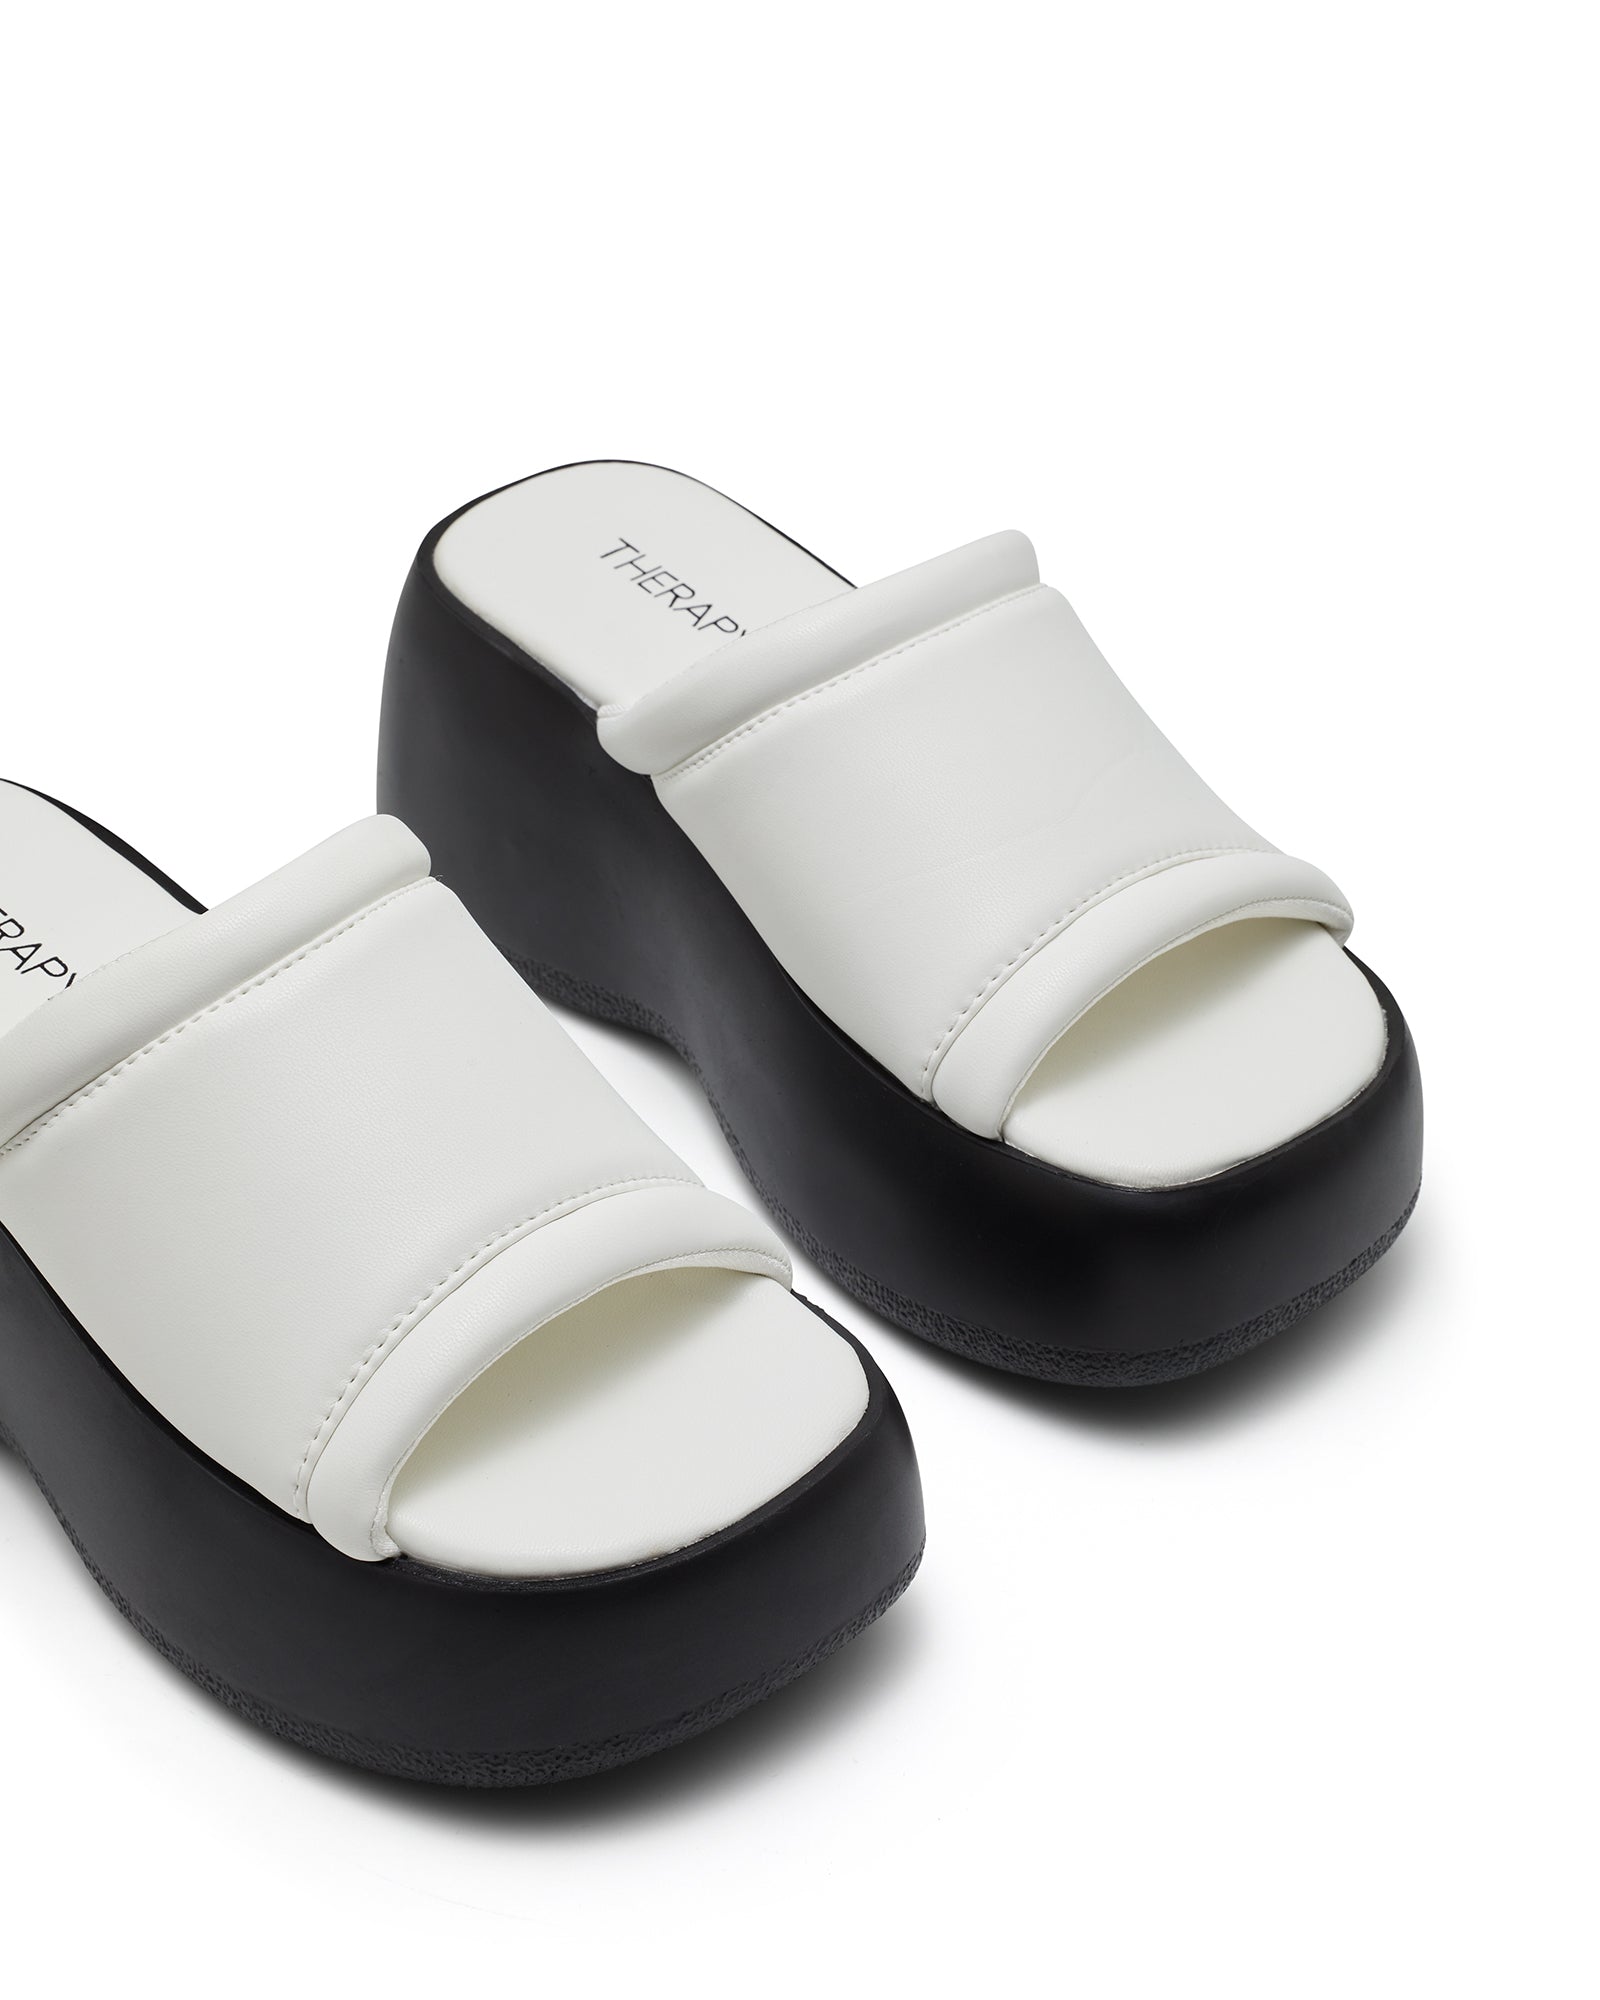 Therapy Shoes Bubbles White | Women's Sandals | Slides | Platform | Flatform